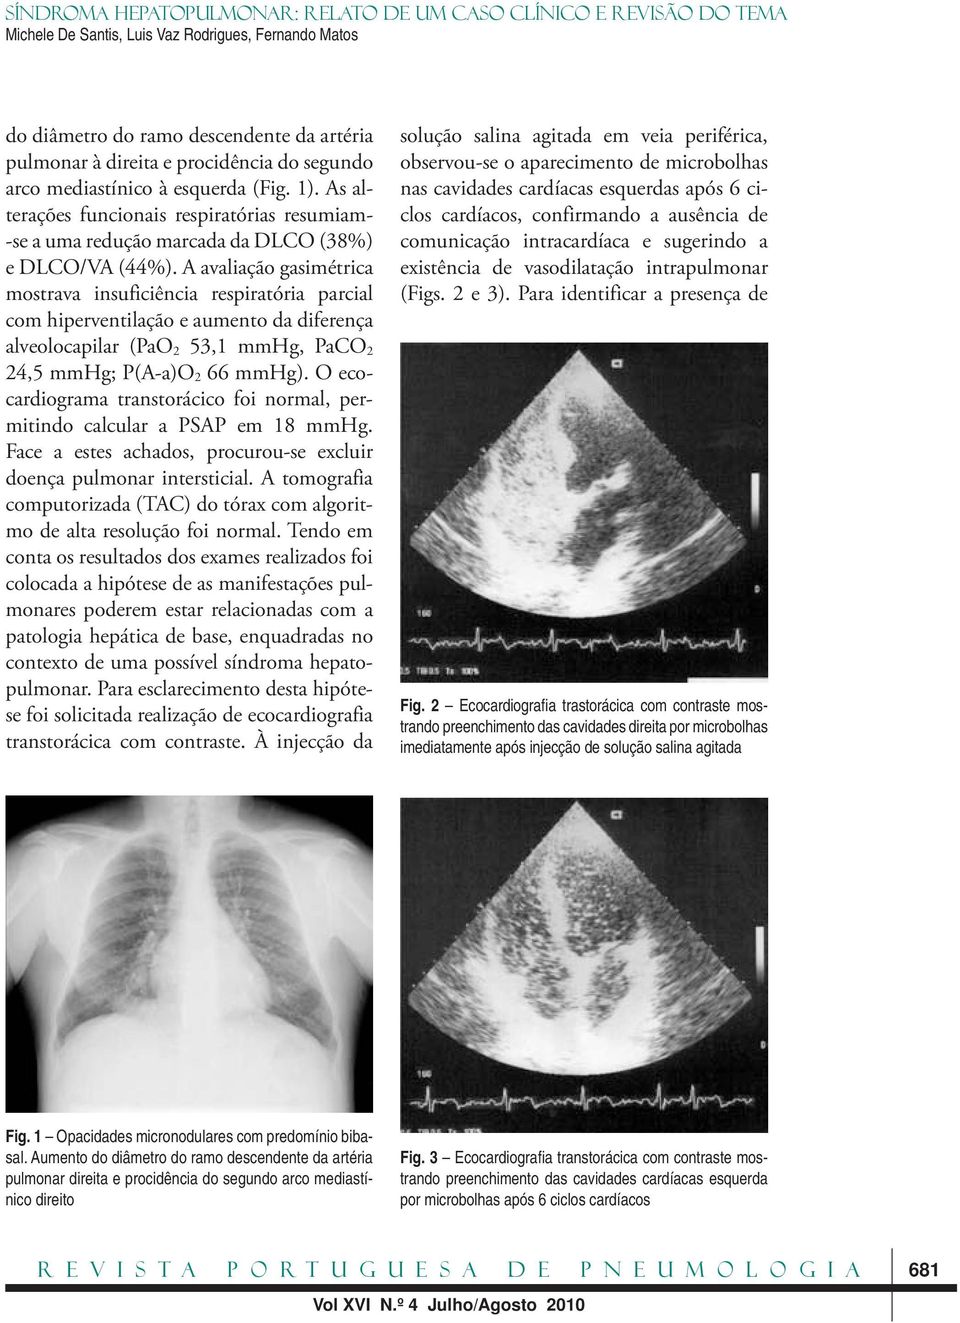 A avaliação gasimétrica mostrava insuficiência respiratória parcial com hiperventilação e aumento da diferença alveolocapilar (PaO 2 53,1 mmhg, PaCO 2 24,5 mmhg; P(A -a)o 2 66 mmhg).